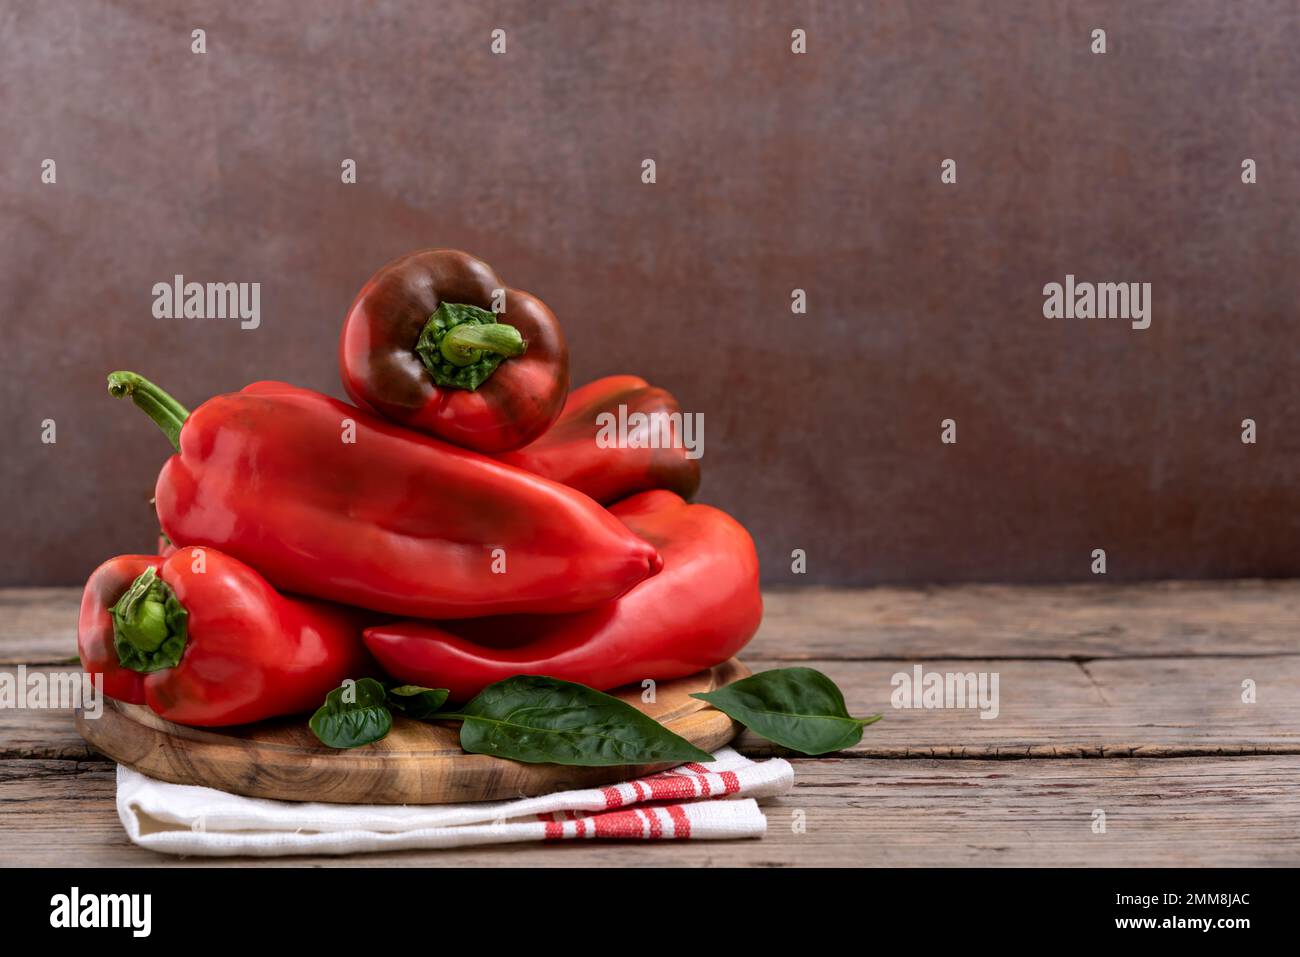 Taglieri con peperoni rossi dolci e foglie verdi su tavola di legno. Messa a fuoco selettiva. Foto Stock